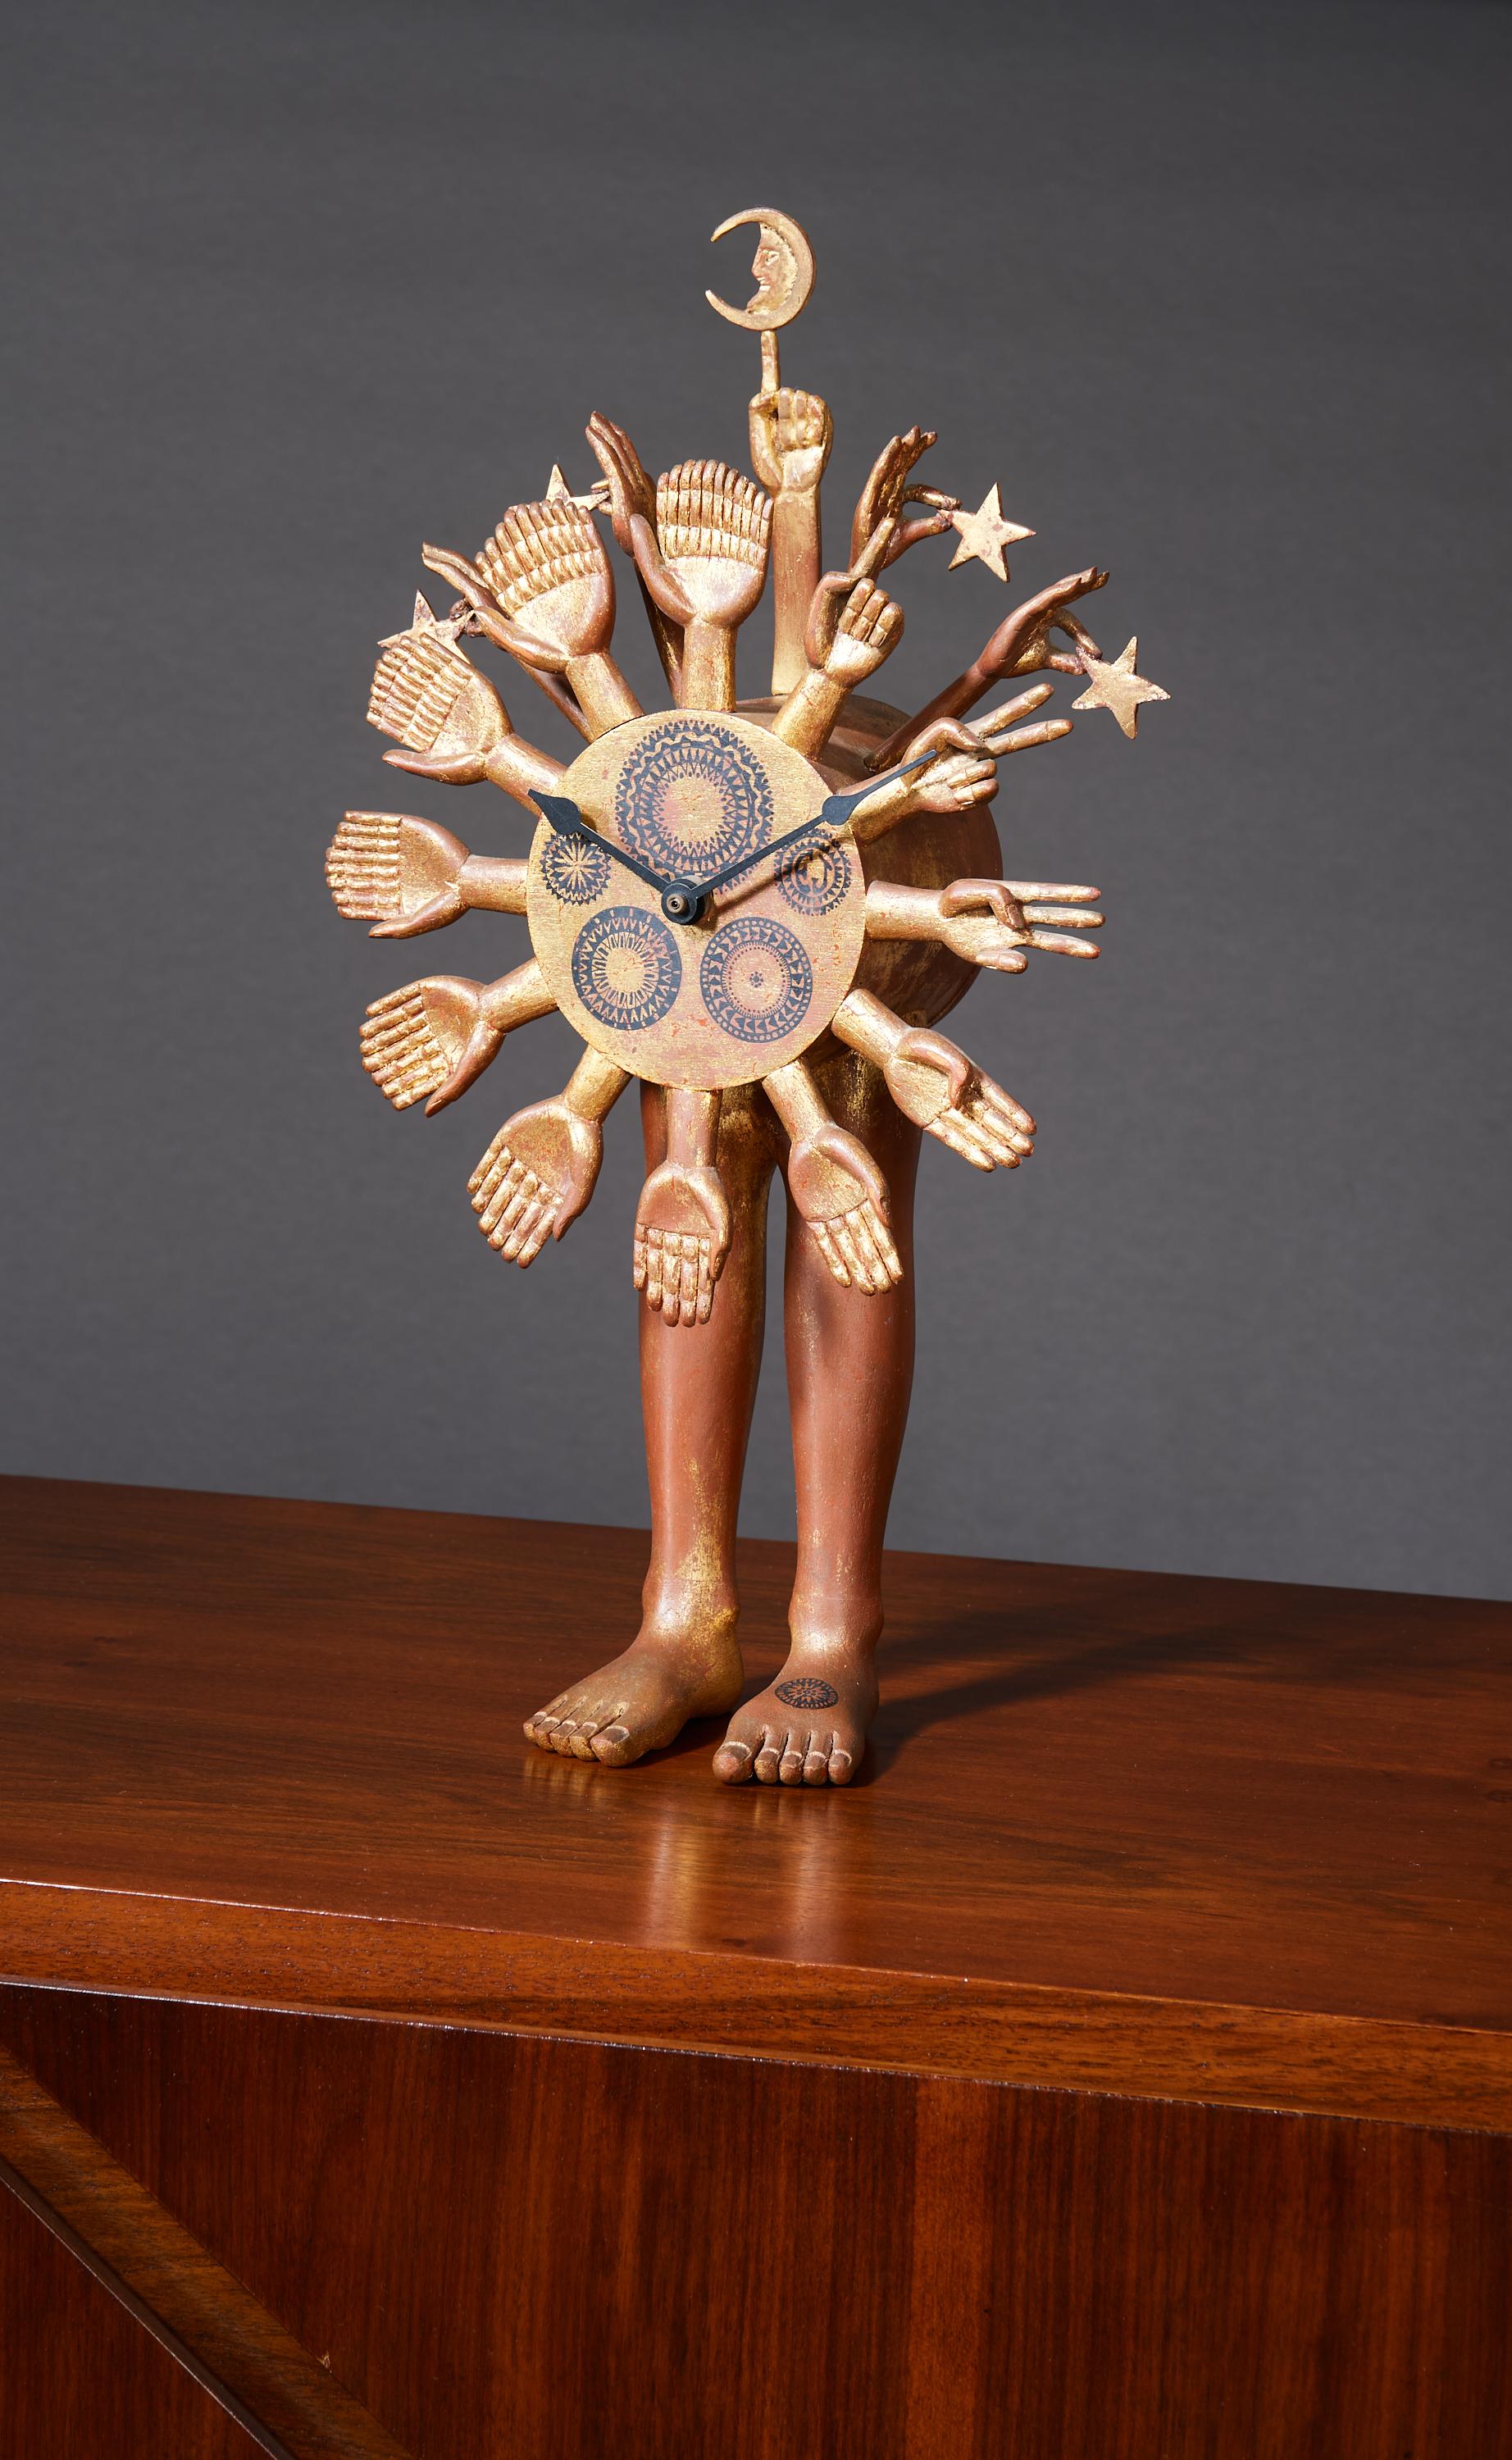 Pedro Friedeberg (né en 1937)

Une exceptionnelle et onirique sculpture Astroclock du maître surréaliste mexicain Pedro Friedeberg, en acajou sculpté et doré à la feuille, enrichie d'une saisissante superposition peinte - une rareté pour l'artiste.